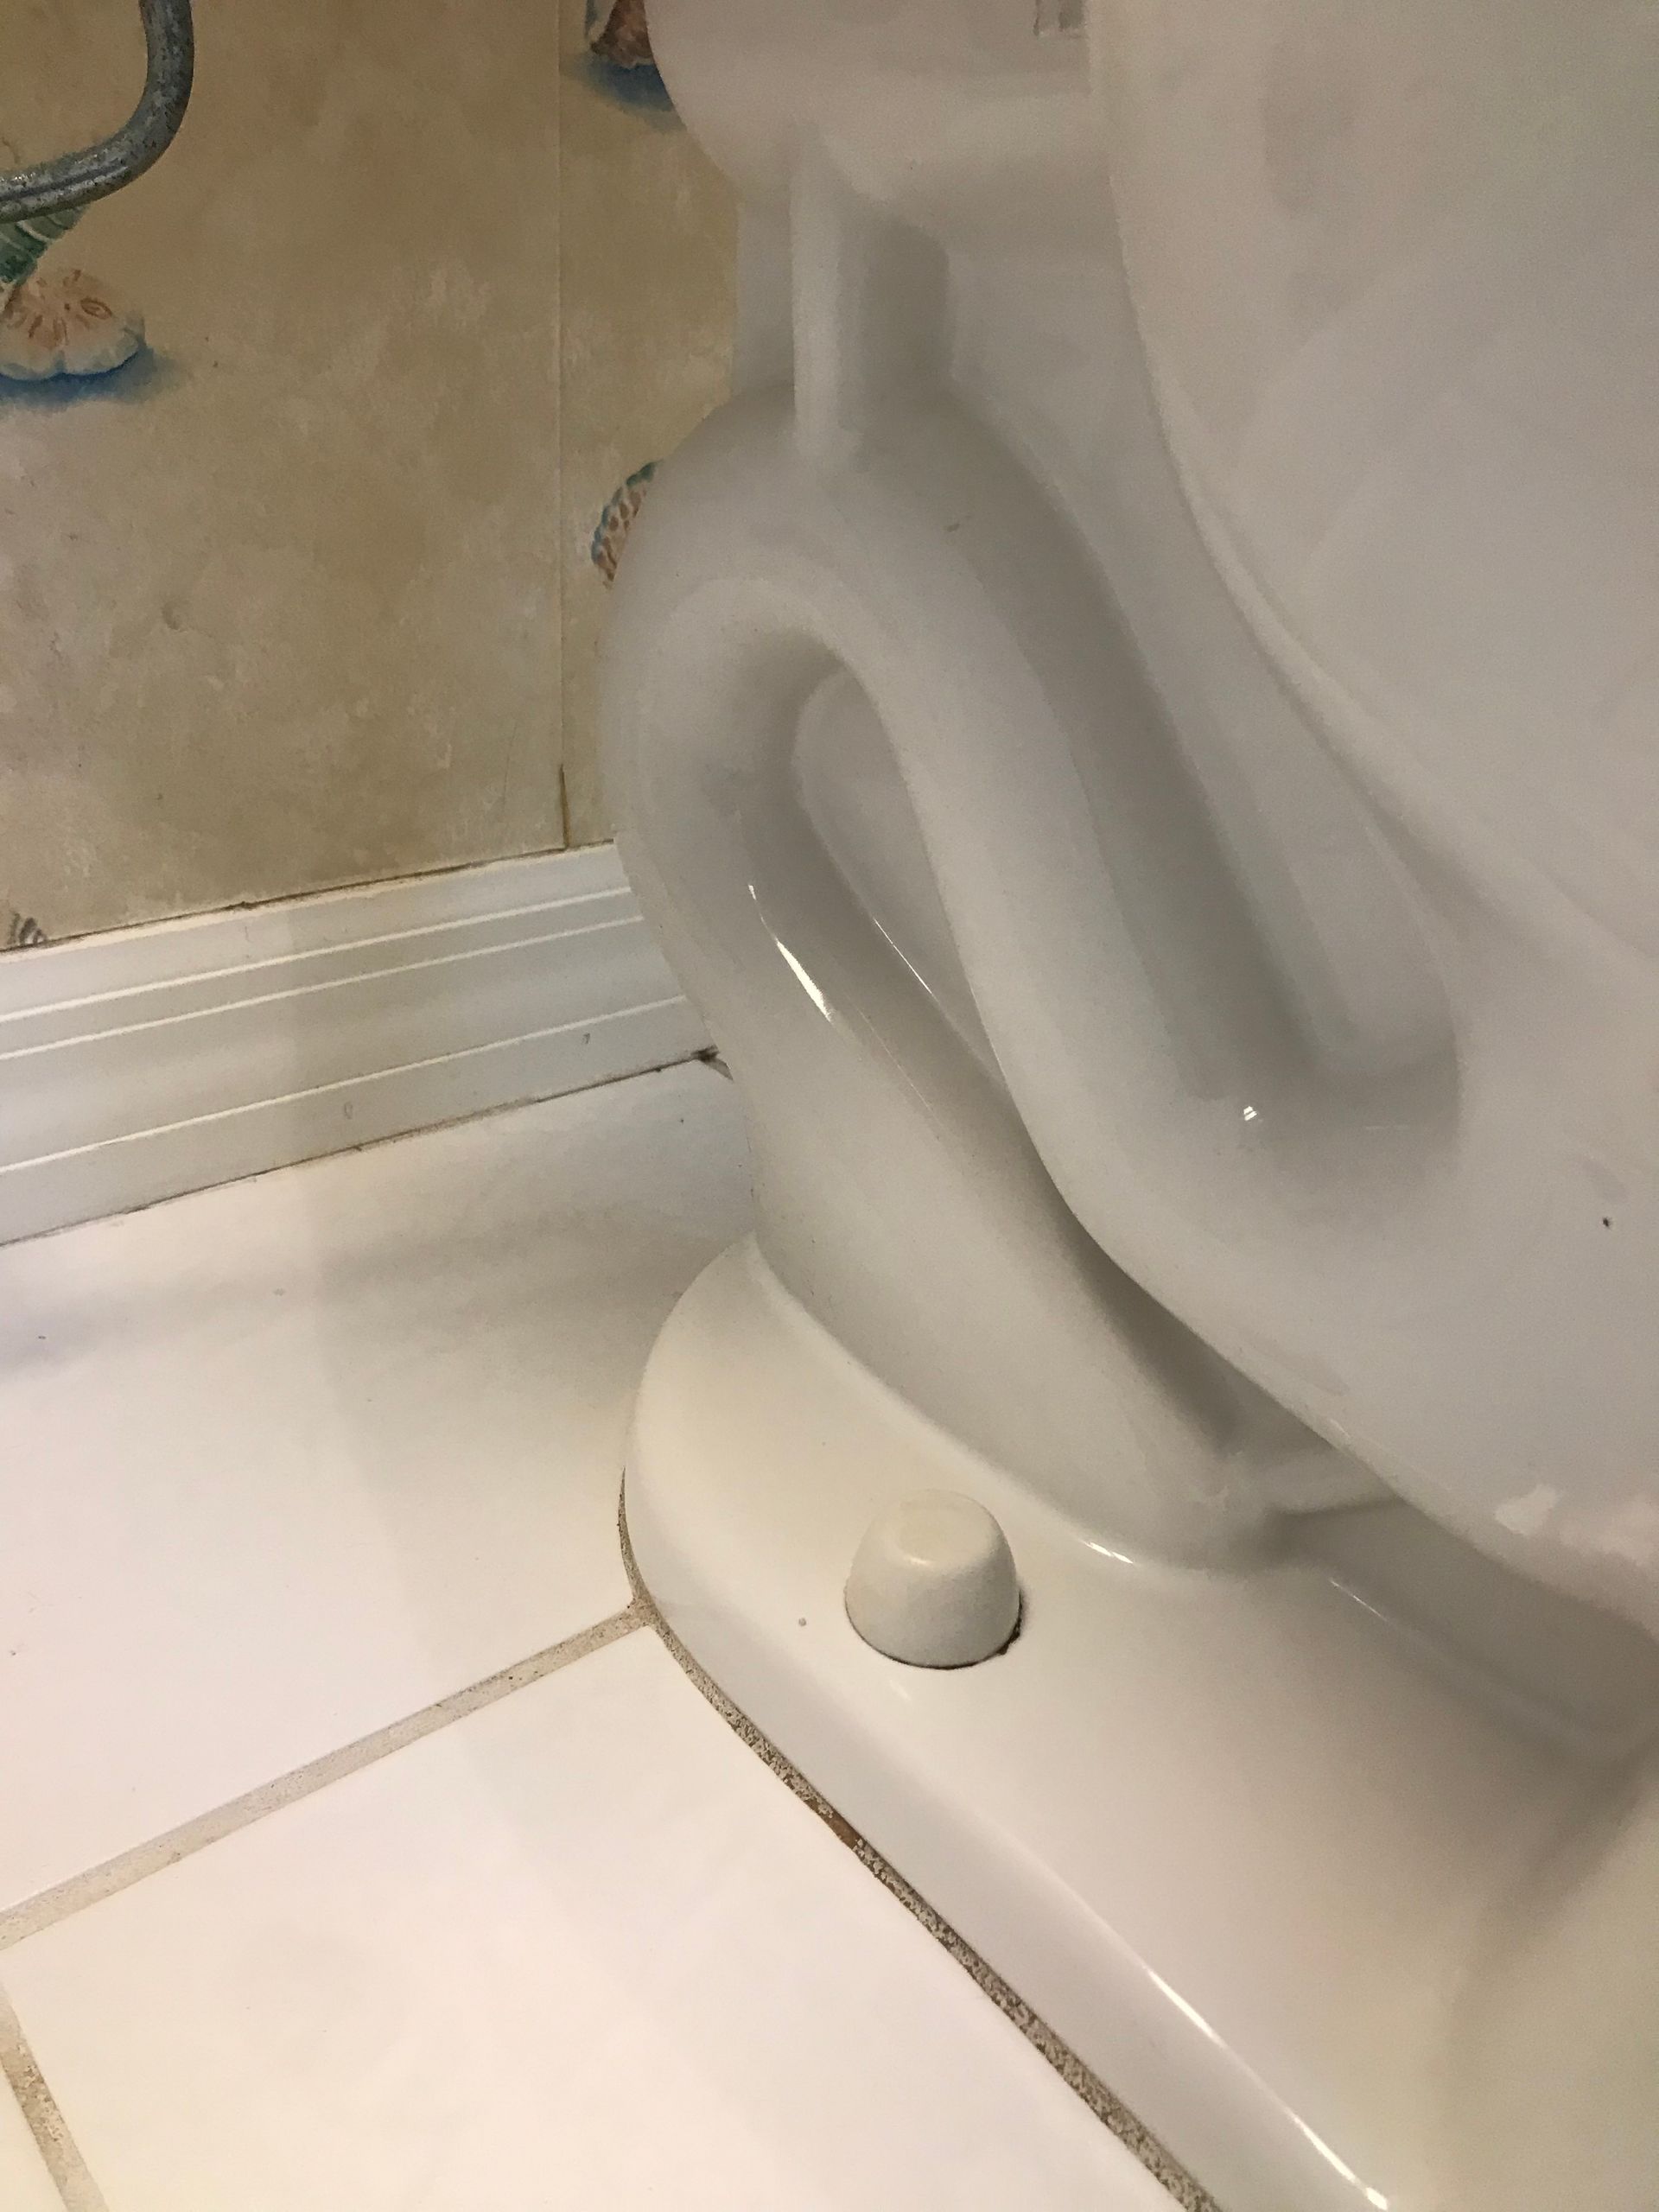 Clean toilet | Lutz, FL | Our Clean Home